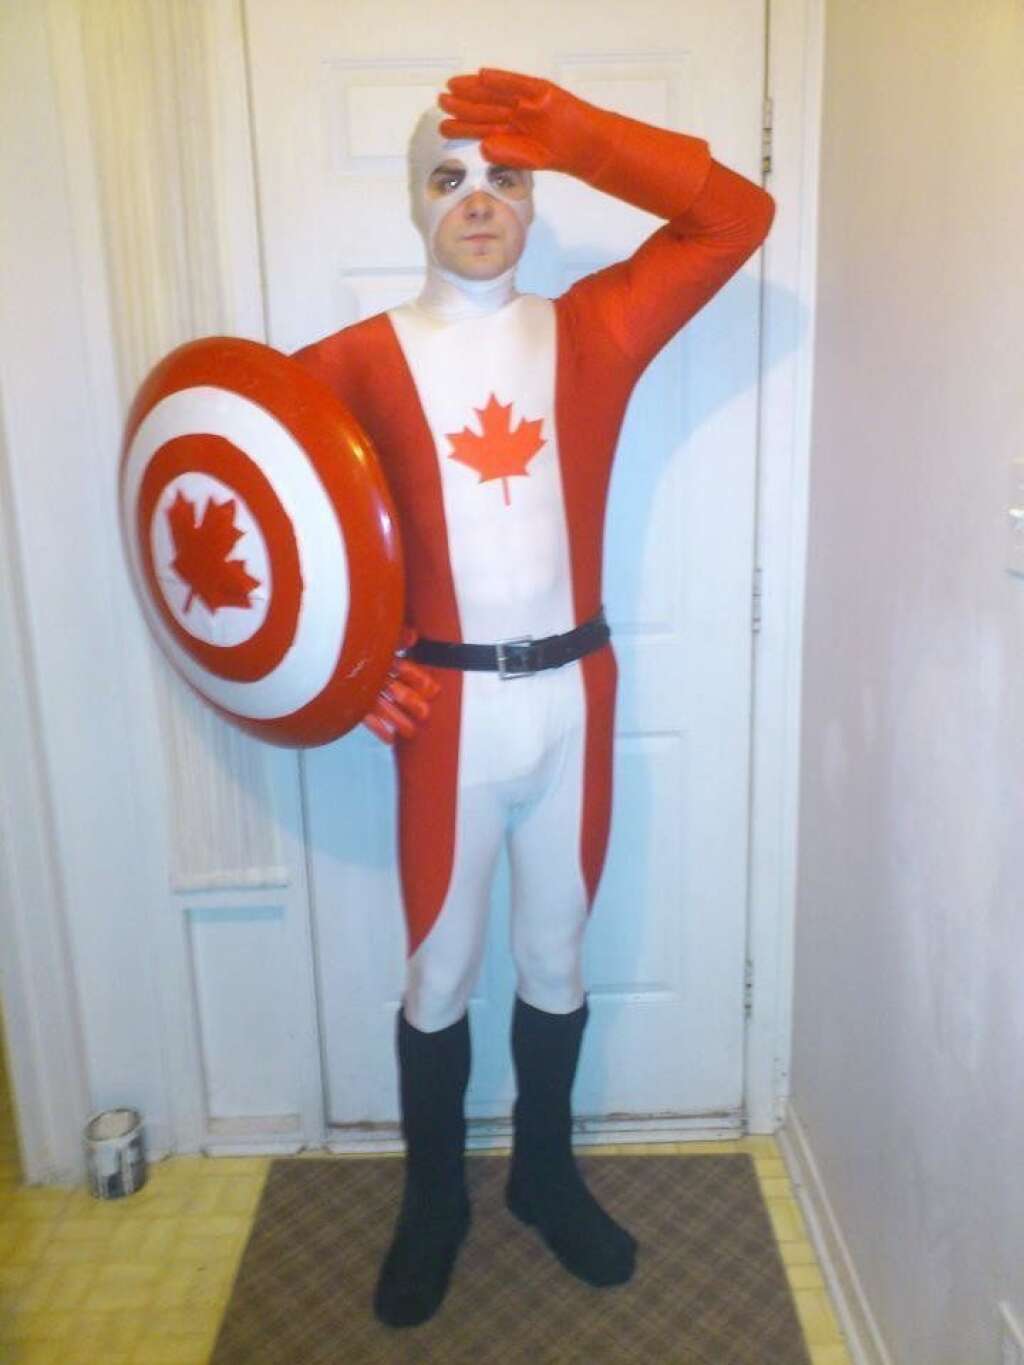 Captain... CANADA - <a href="http://i.imgur.com/rVo8a.jpg">SOURCE</a>